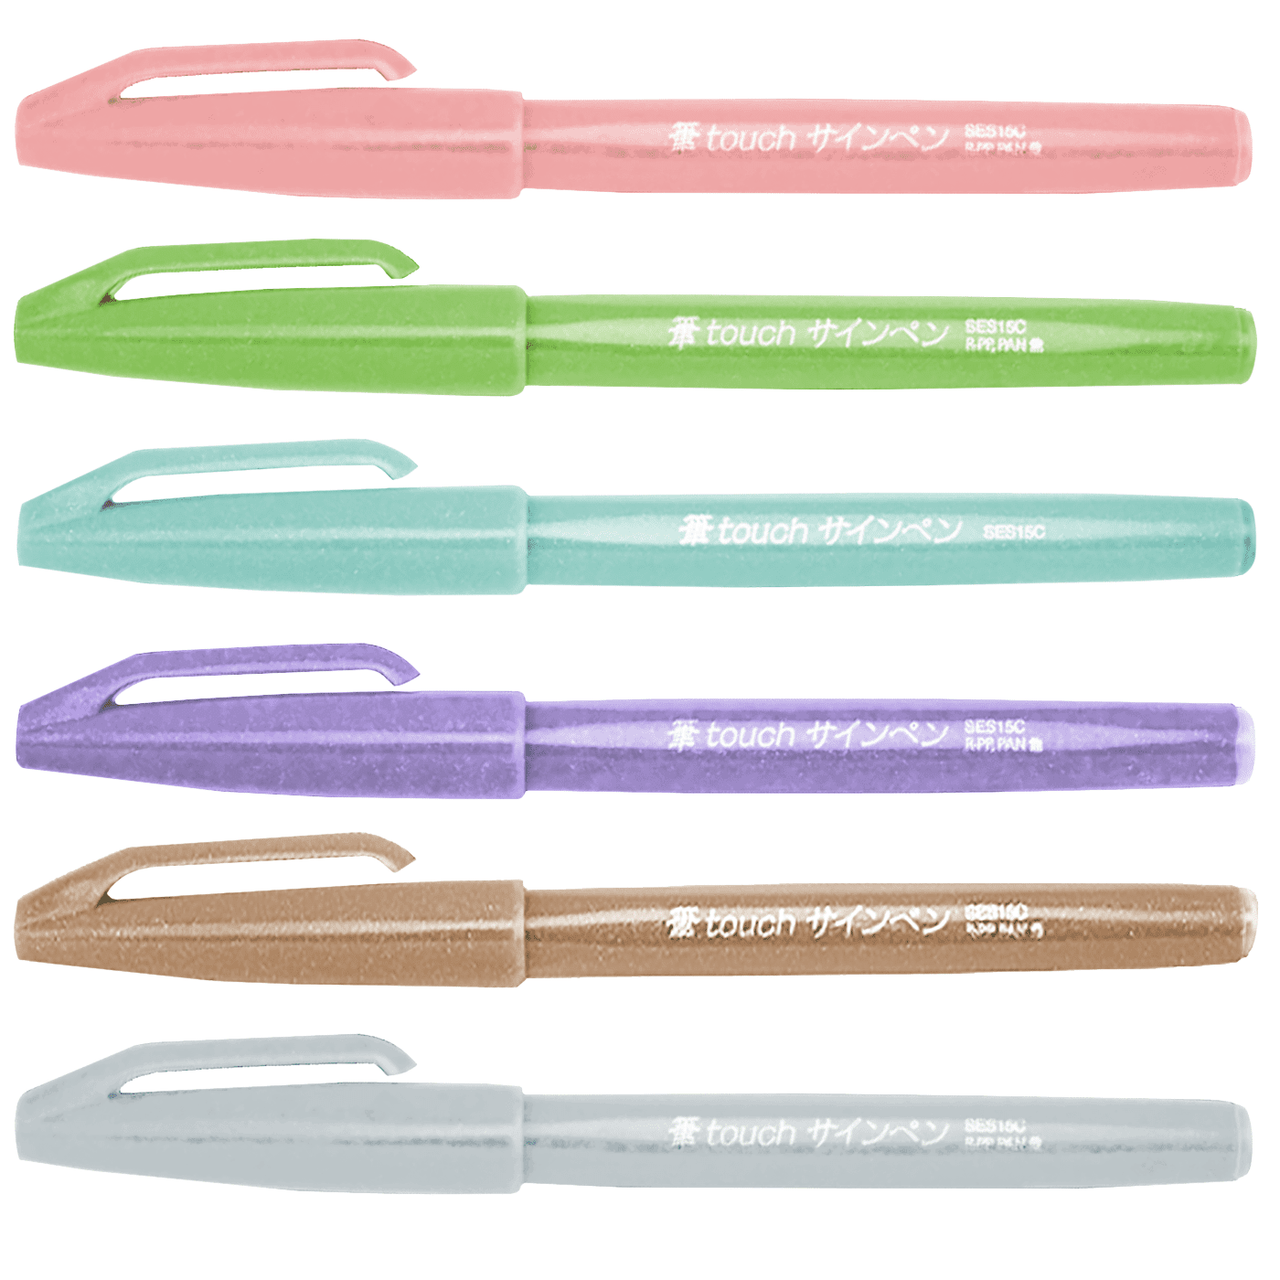 Pentel Touch Brush Pen vs. Pentel Sign Pen